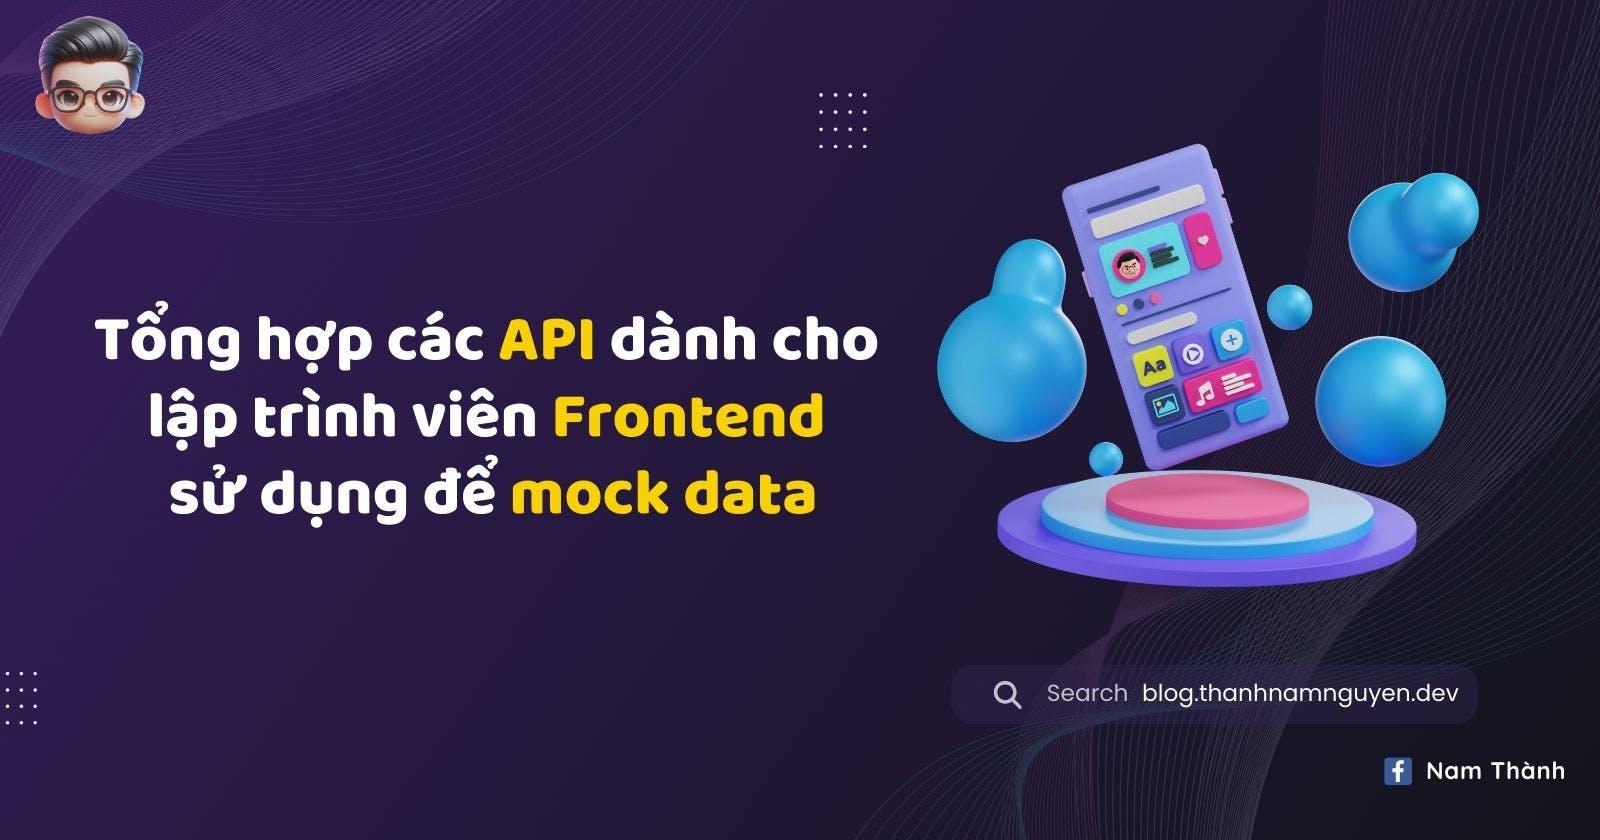 Tổng hợp các API dành cho lập trình viên Frontend sử dụng để mock data